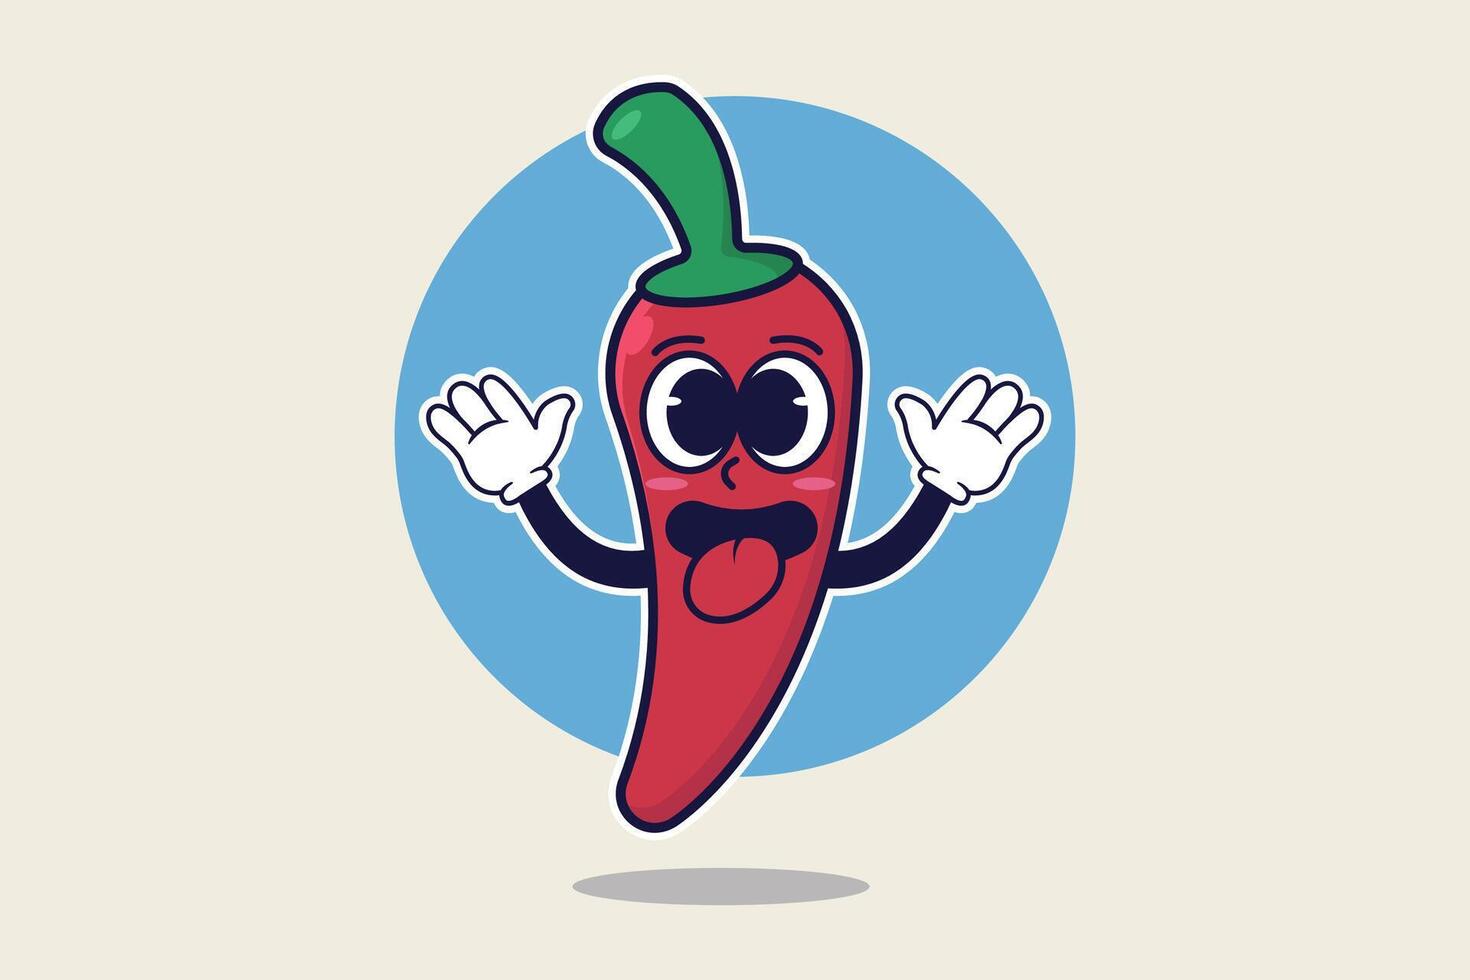 chili karakter mascotte ontwerp met gelukkig en grappig uitdrukking, vector illustratie